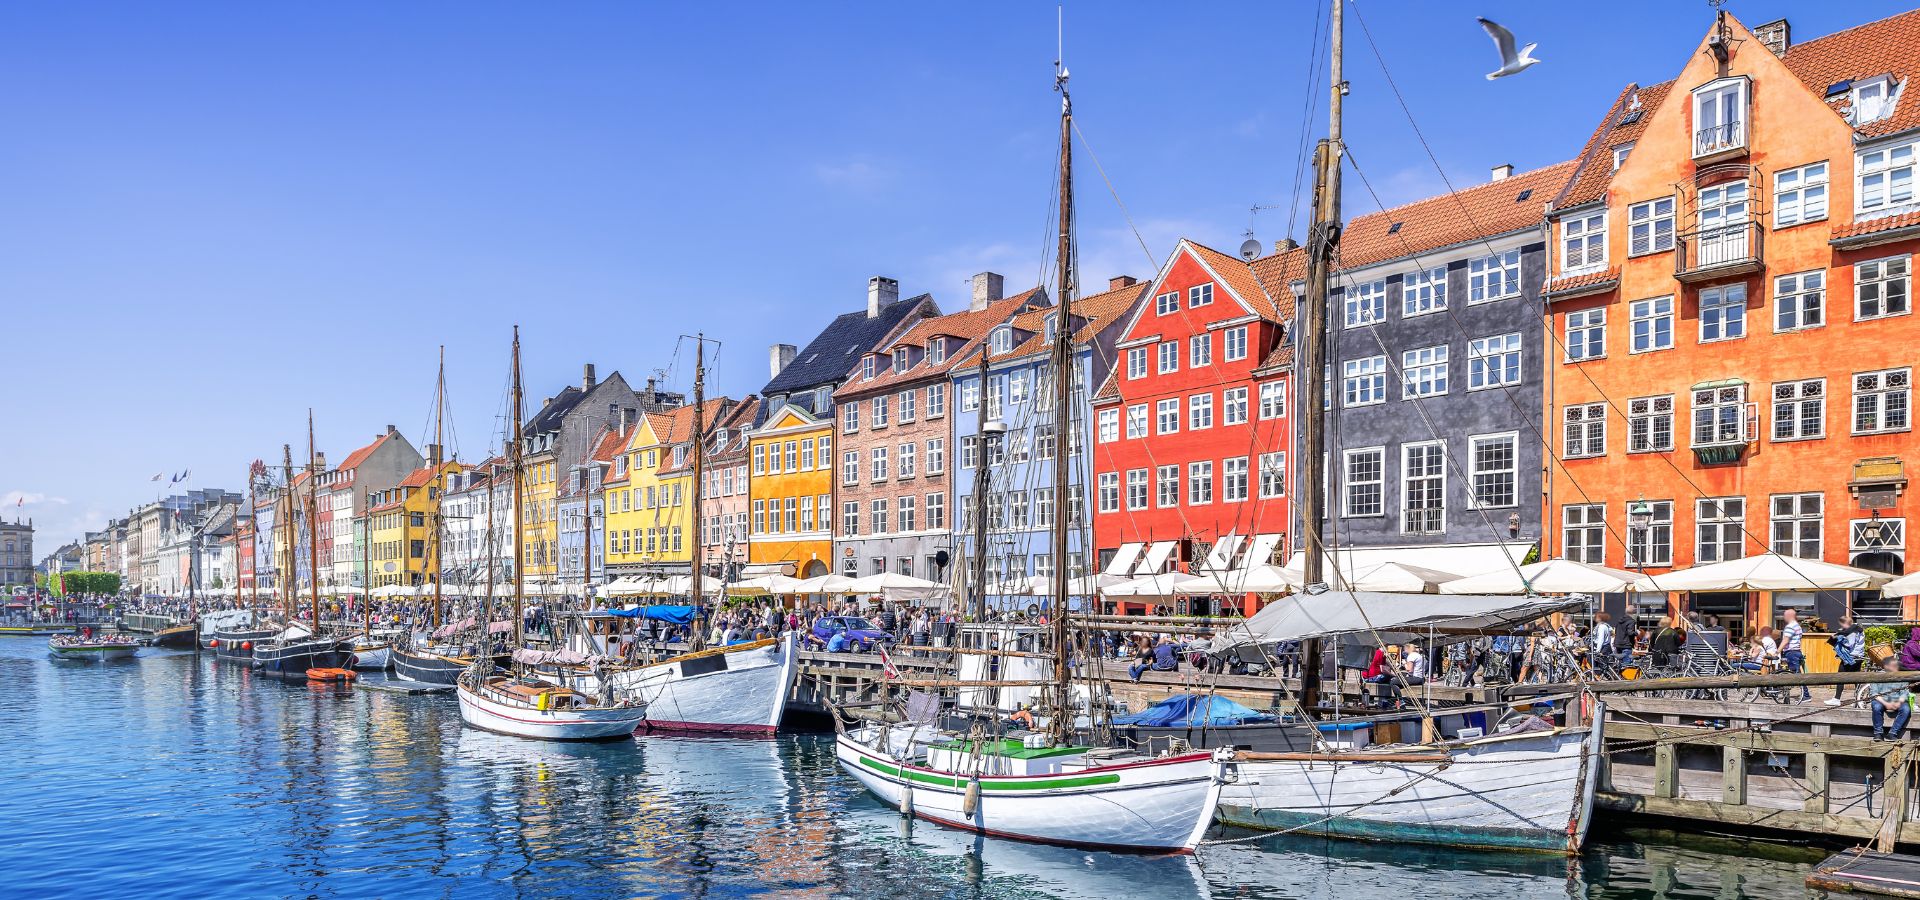 8 lugares imprescindibles de Copenhague y alrededores que no te querrás perder